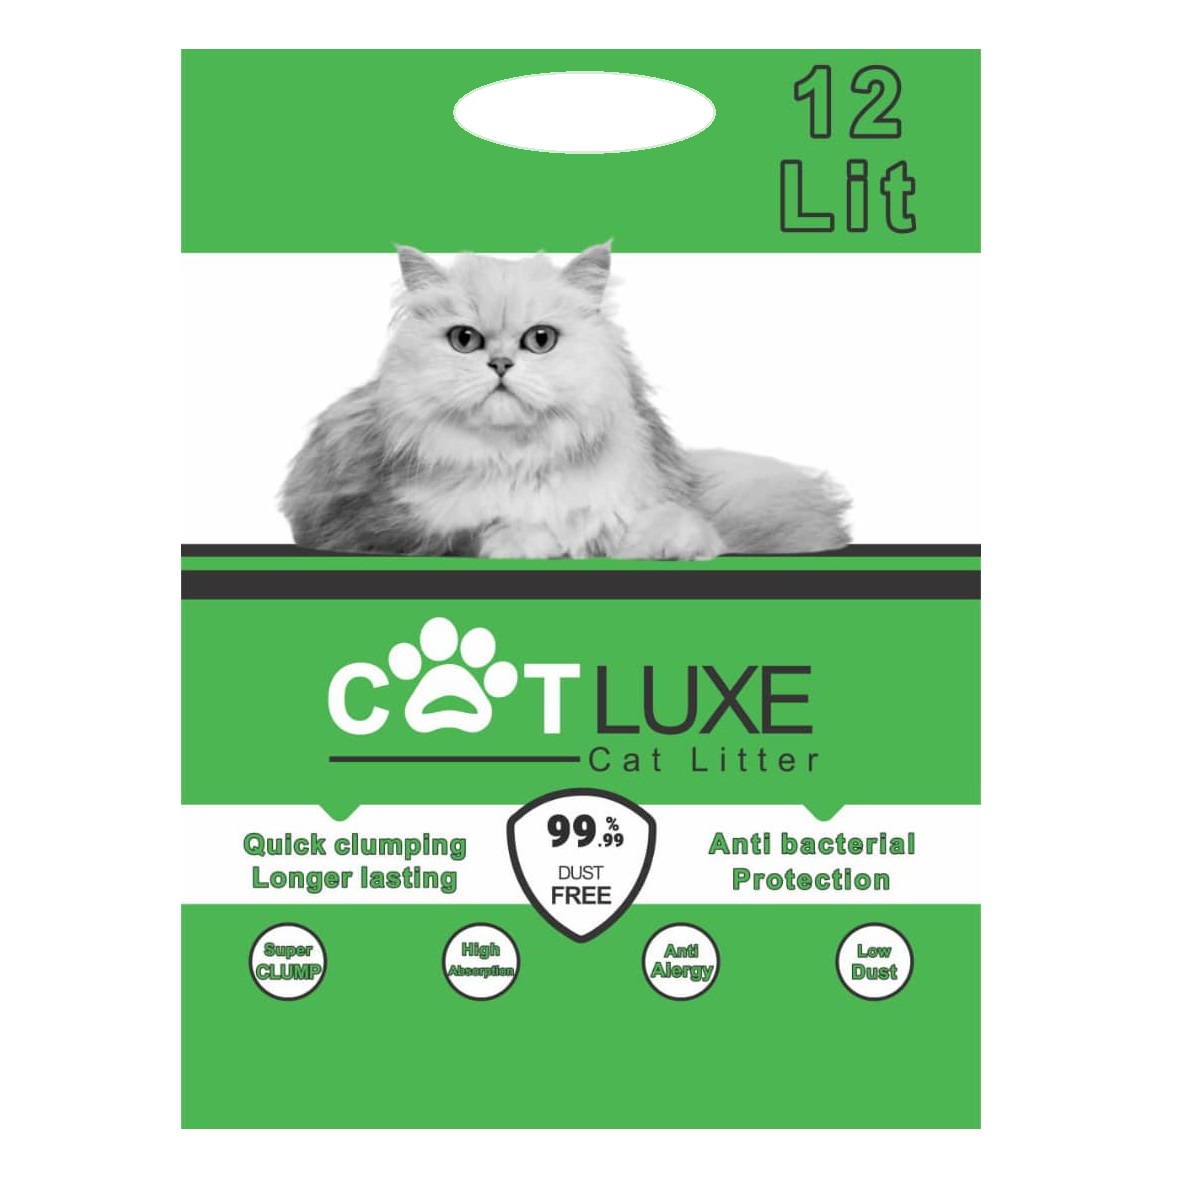 درست کردن غذای خانگی برای گربه - خاک گربه کت لوکس گرانول وزن 10 کیلوگرم